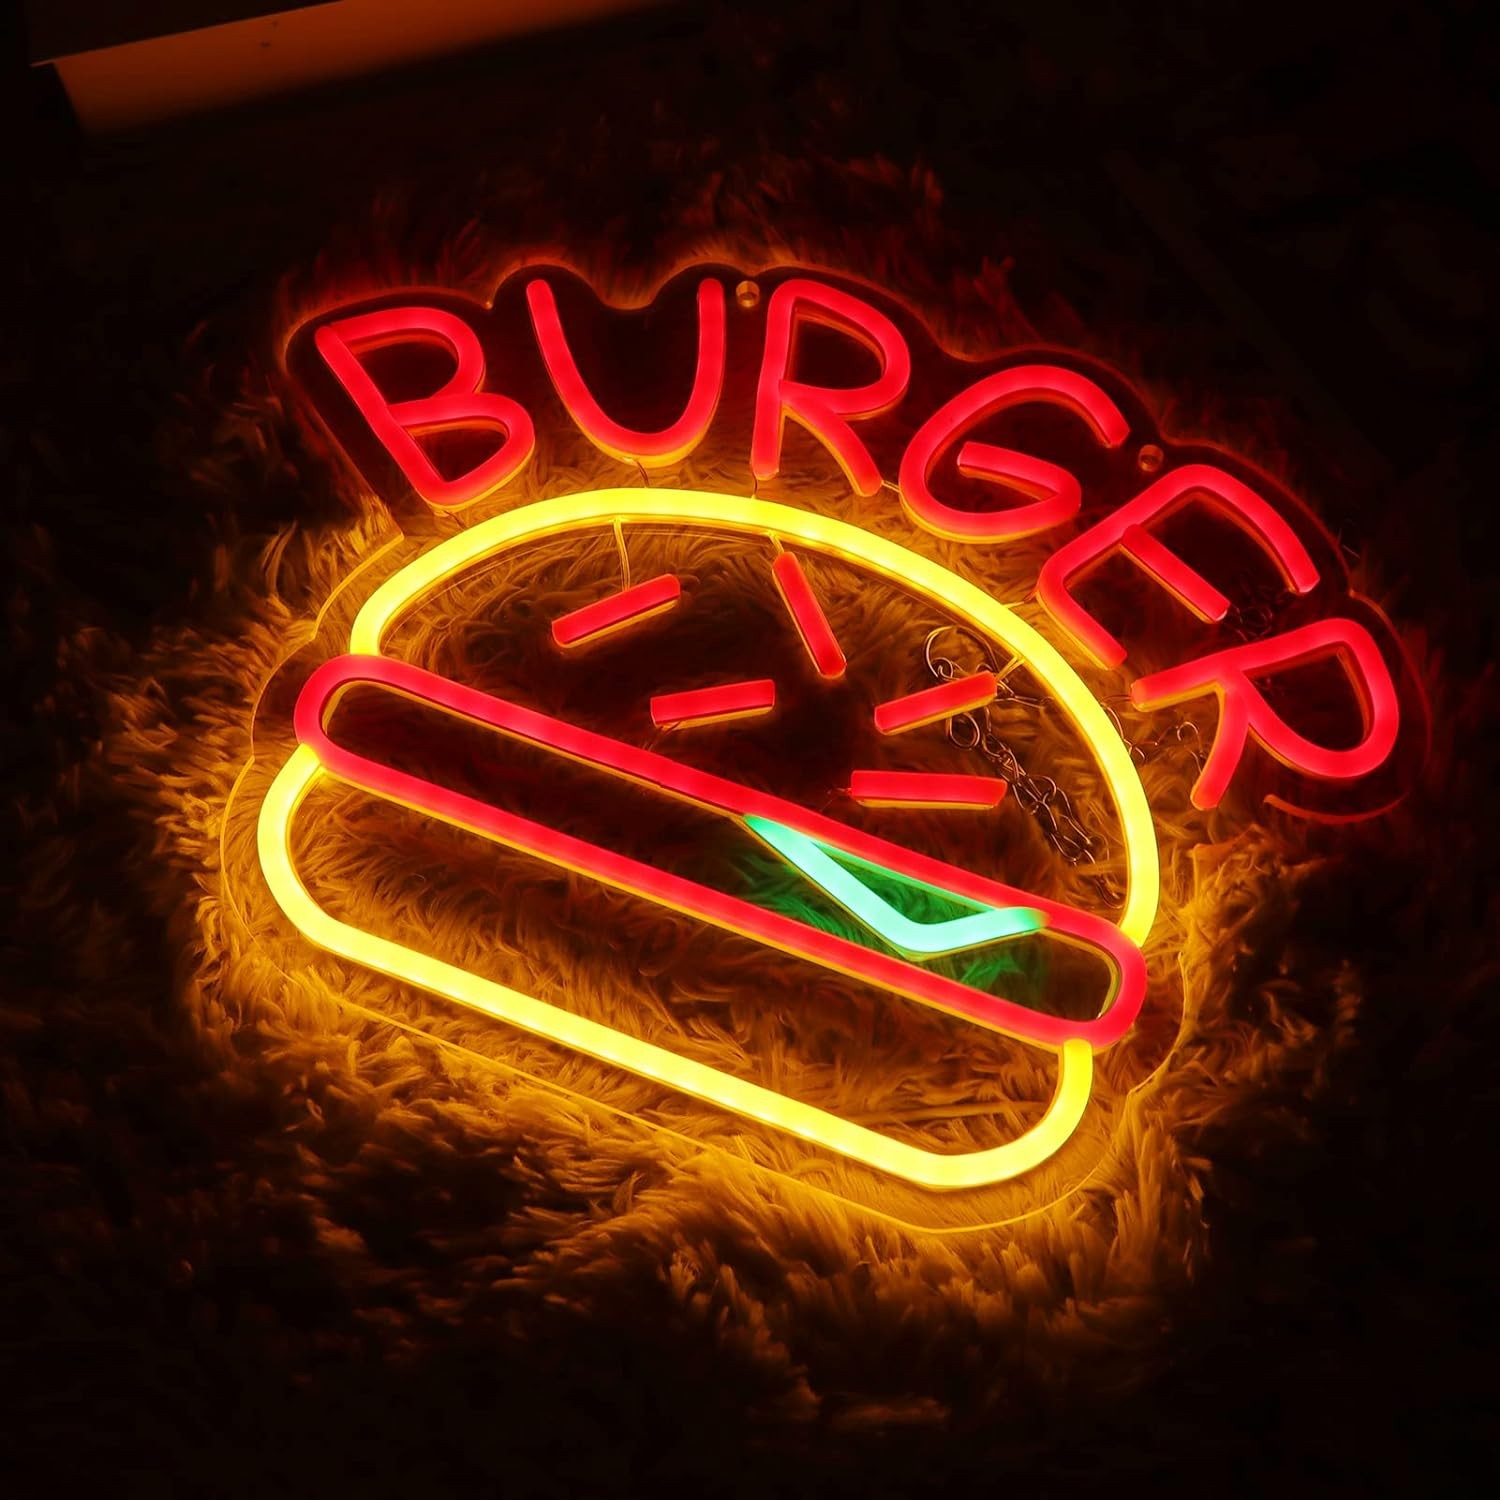 Publicidad de hamburguesas, letrero de neón LED brillante iluminado